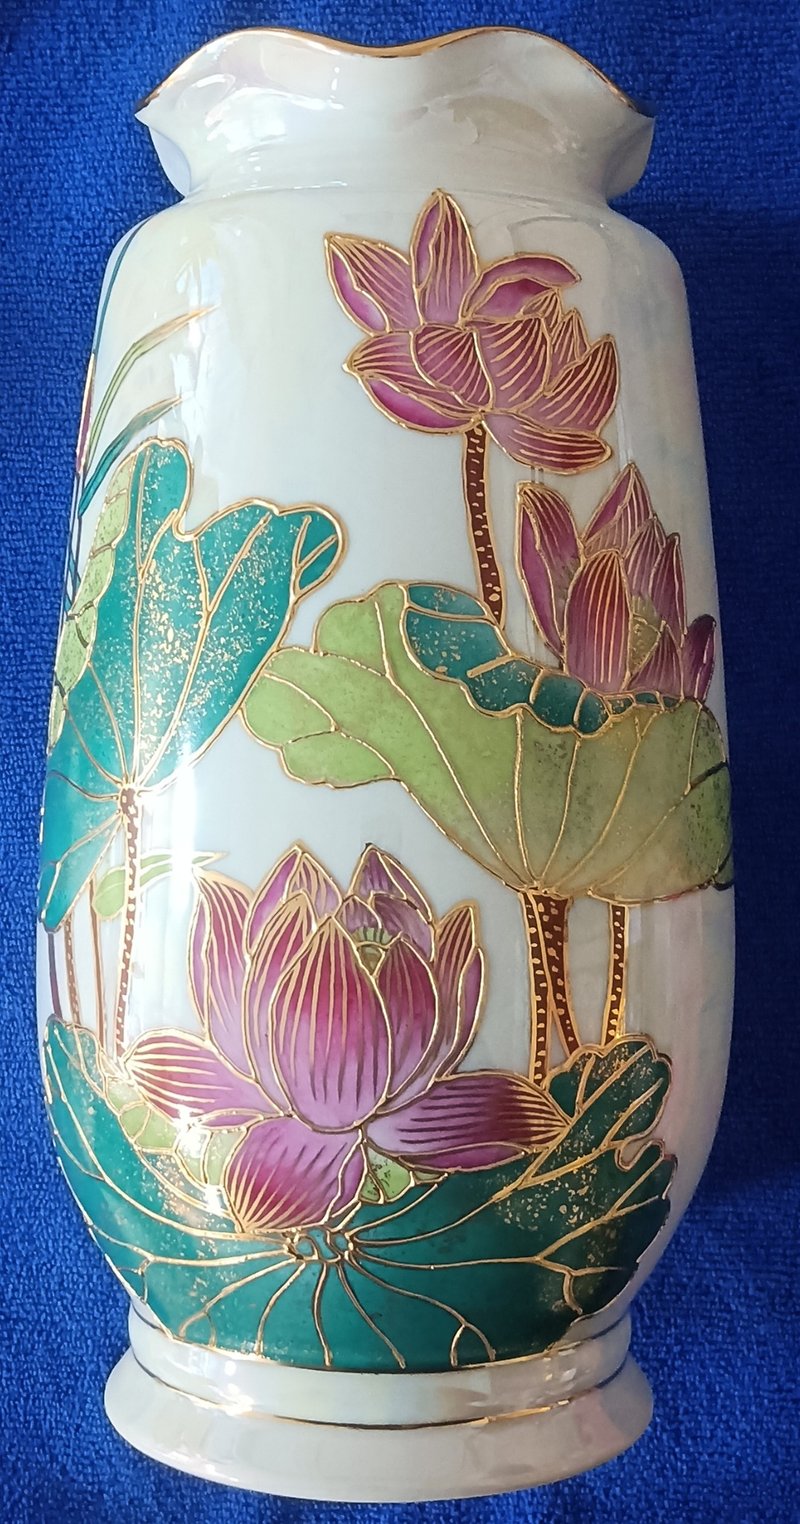 【彩繪花瓶】10吋雕金彩胖荷瓶 - 花瓶/花器 - 瓷 